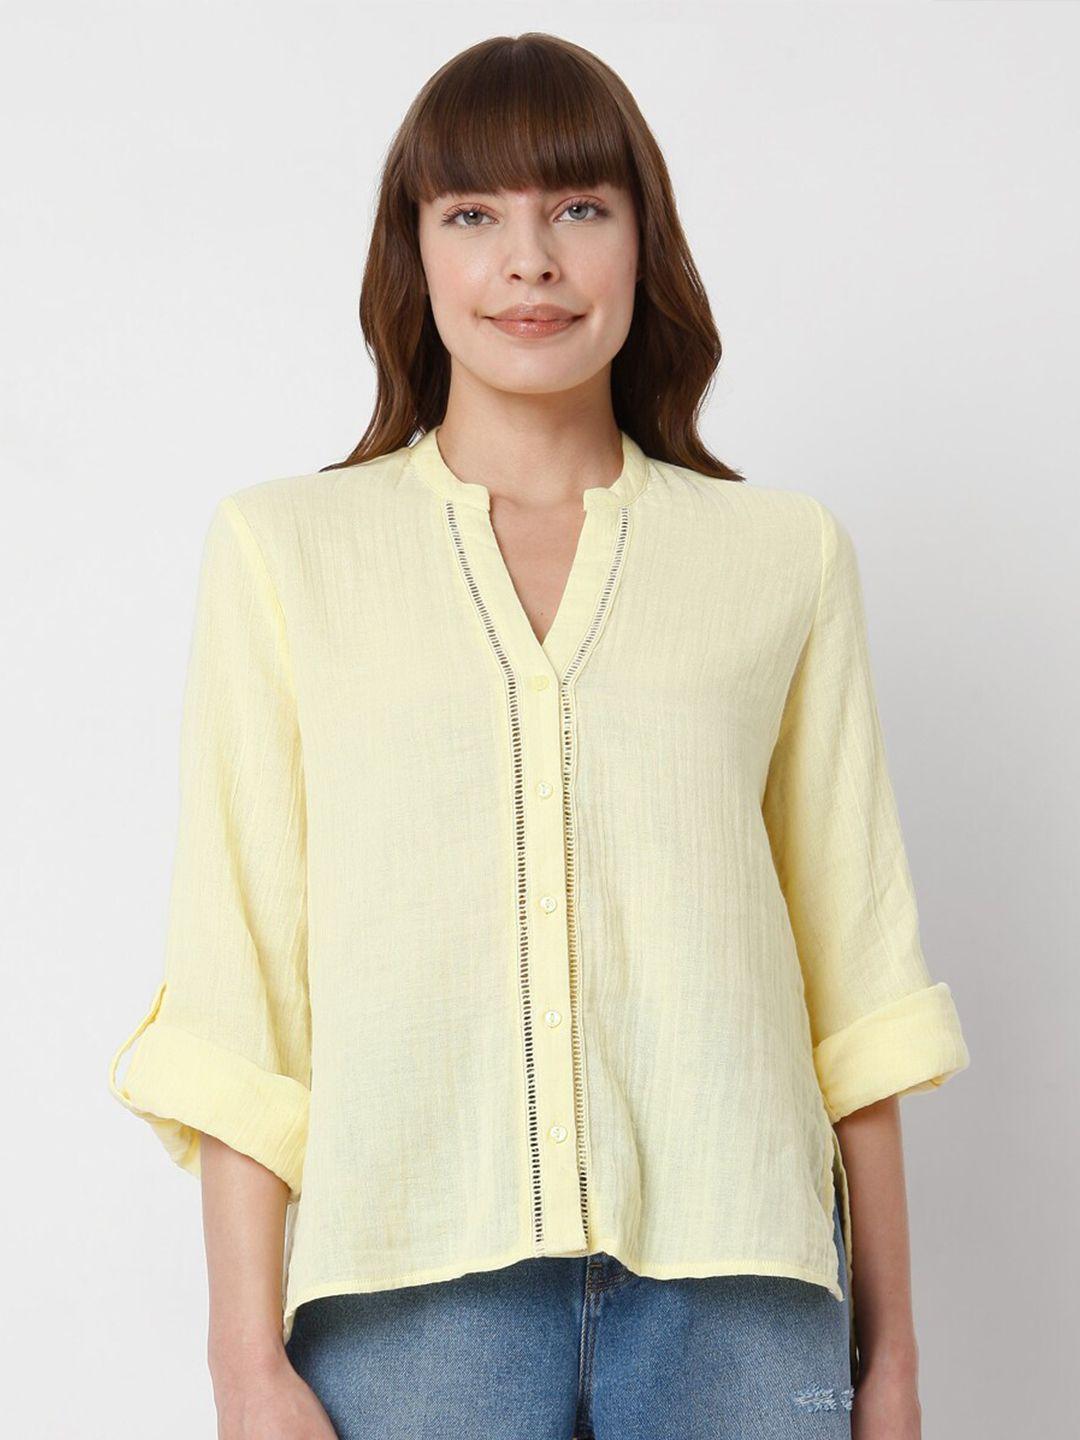 vero moda women yellow shirt style top